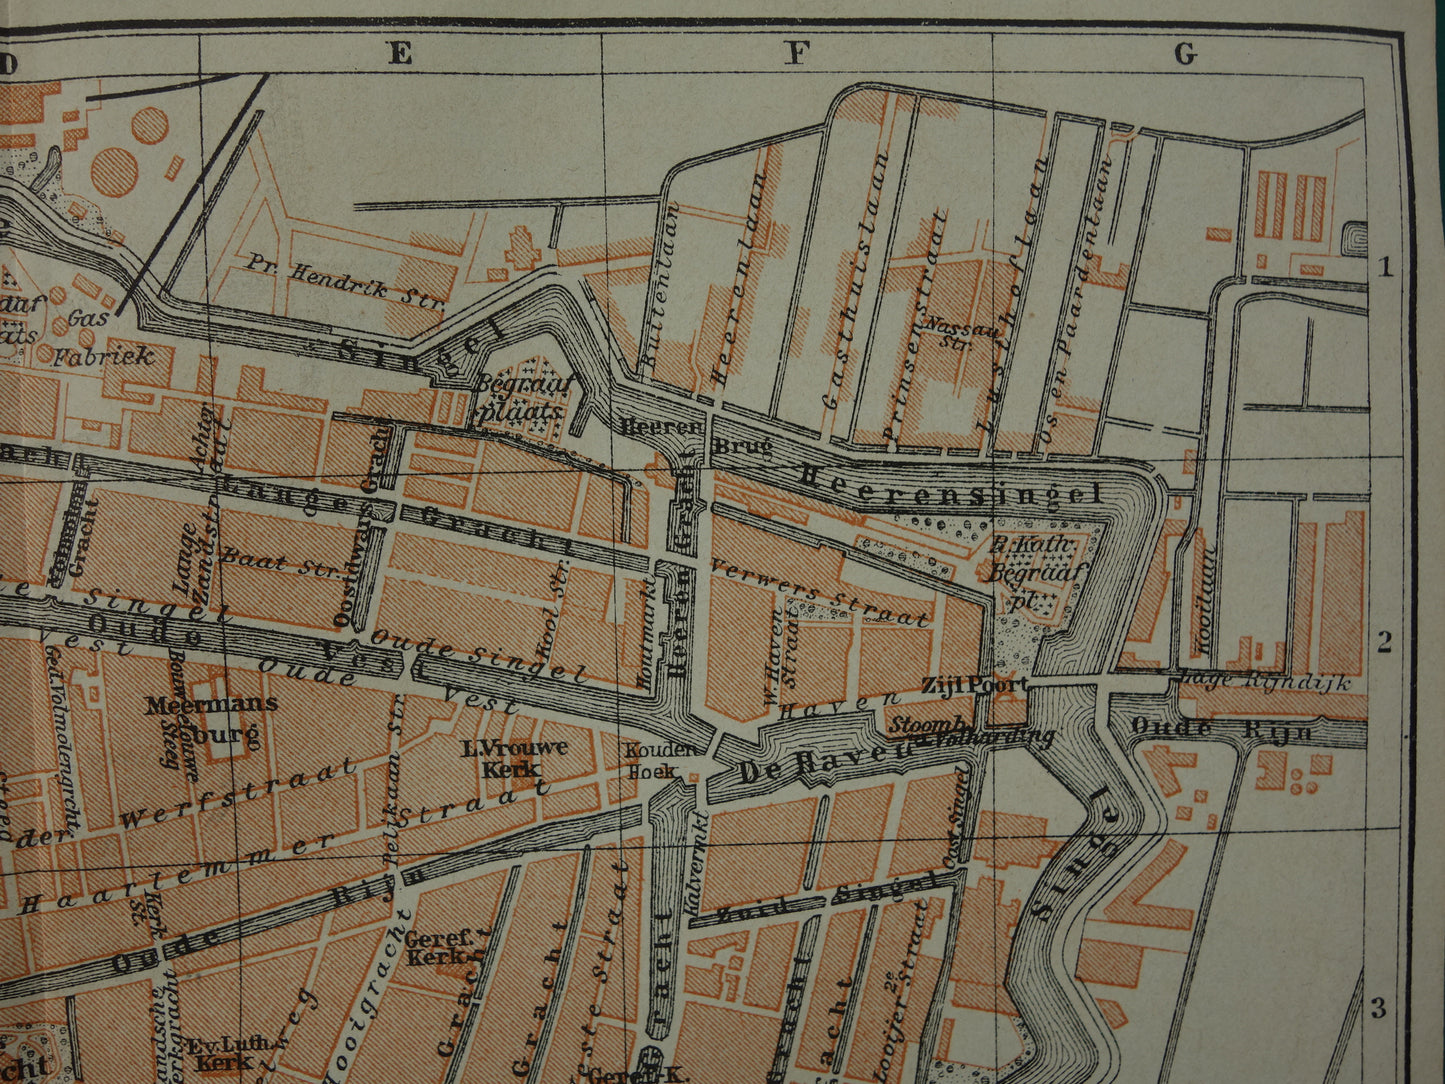 LEIDEN oude kaart van Leiden uit 1910 kleine originele antieke plattegrond